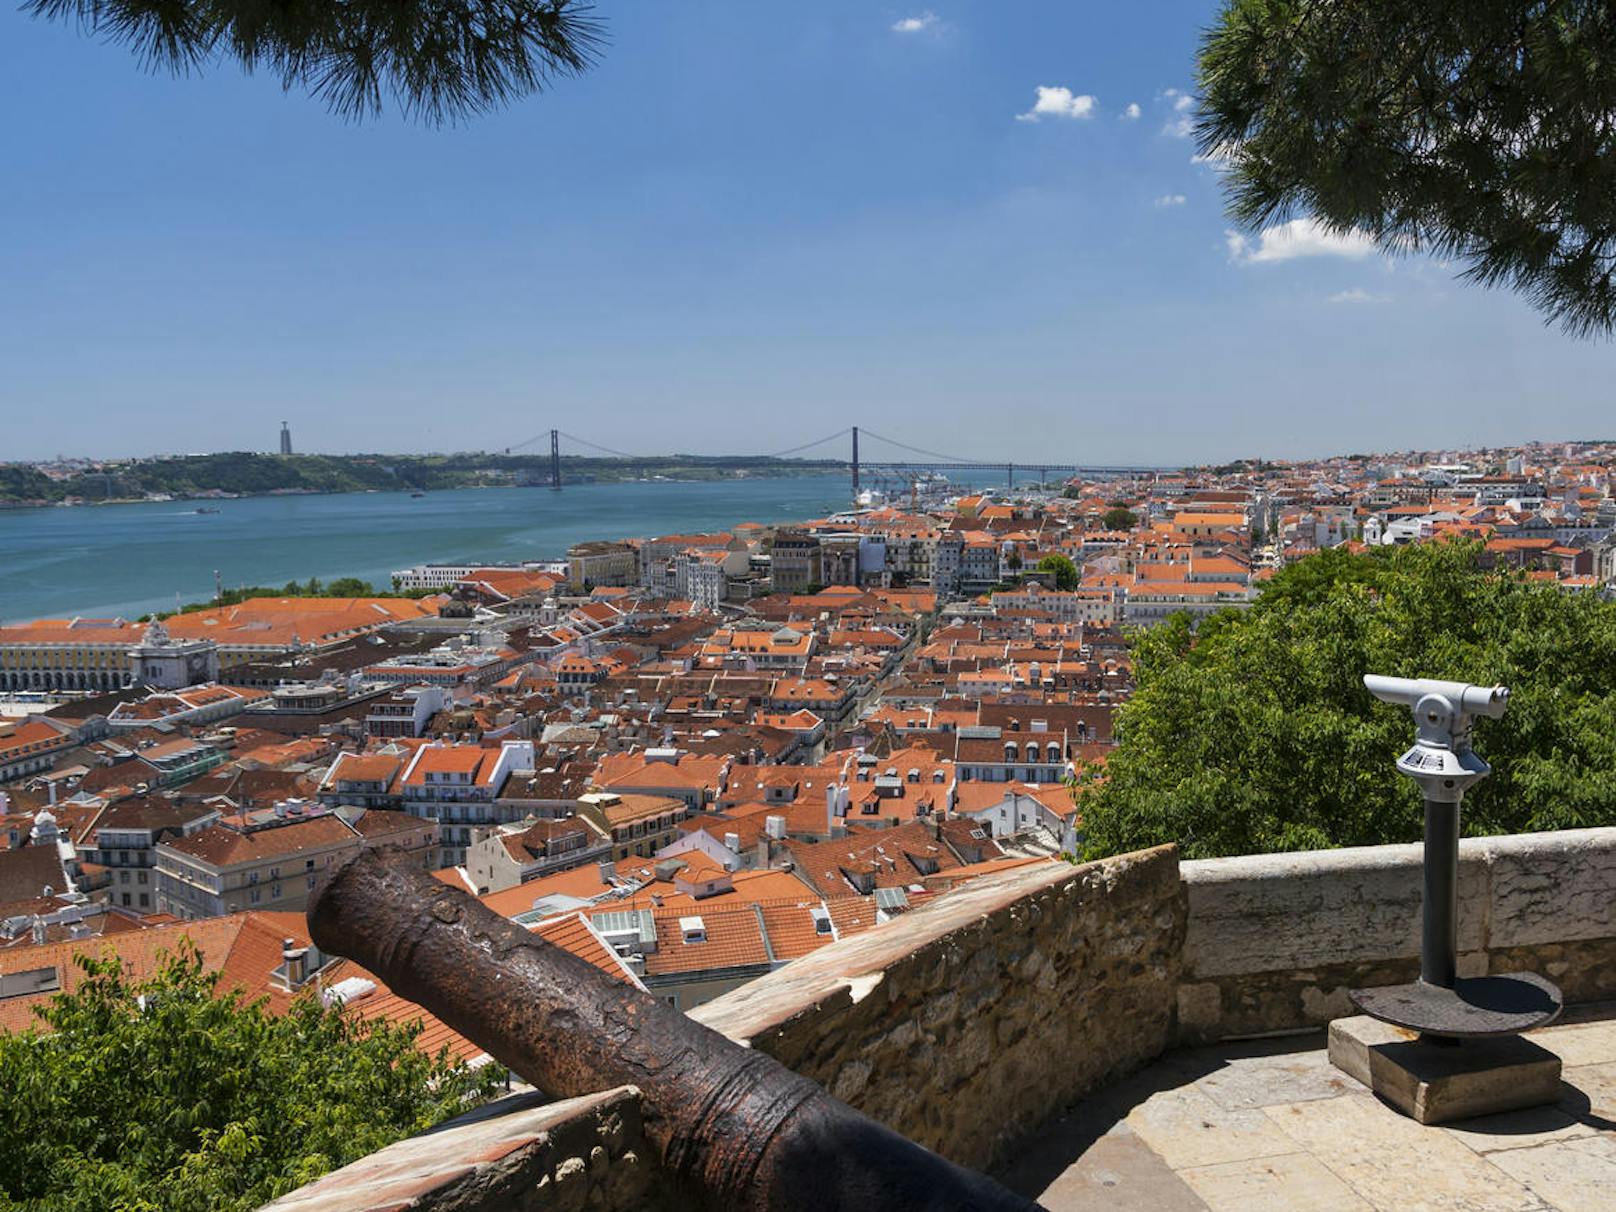 Die meisten Corona-Ansteckungen Europas finden derzeit in Portugal statt. Die Sieben-Tage-Inzidenz, die Zahl der Neuinfektionen pro 100.000 Einwohner in sieben Tagen, liegt bei 1.133 (Stand: 25. Juni). Hotspots sind Lissabon (Bild), sowie ...